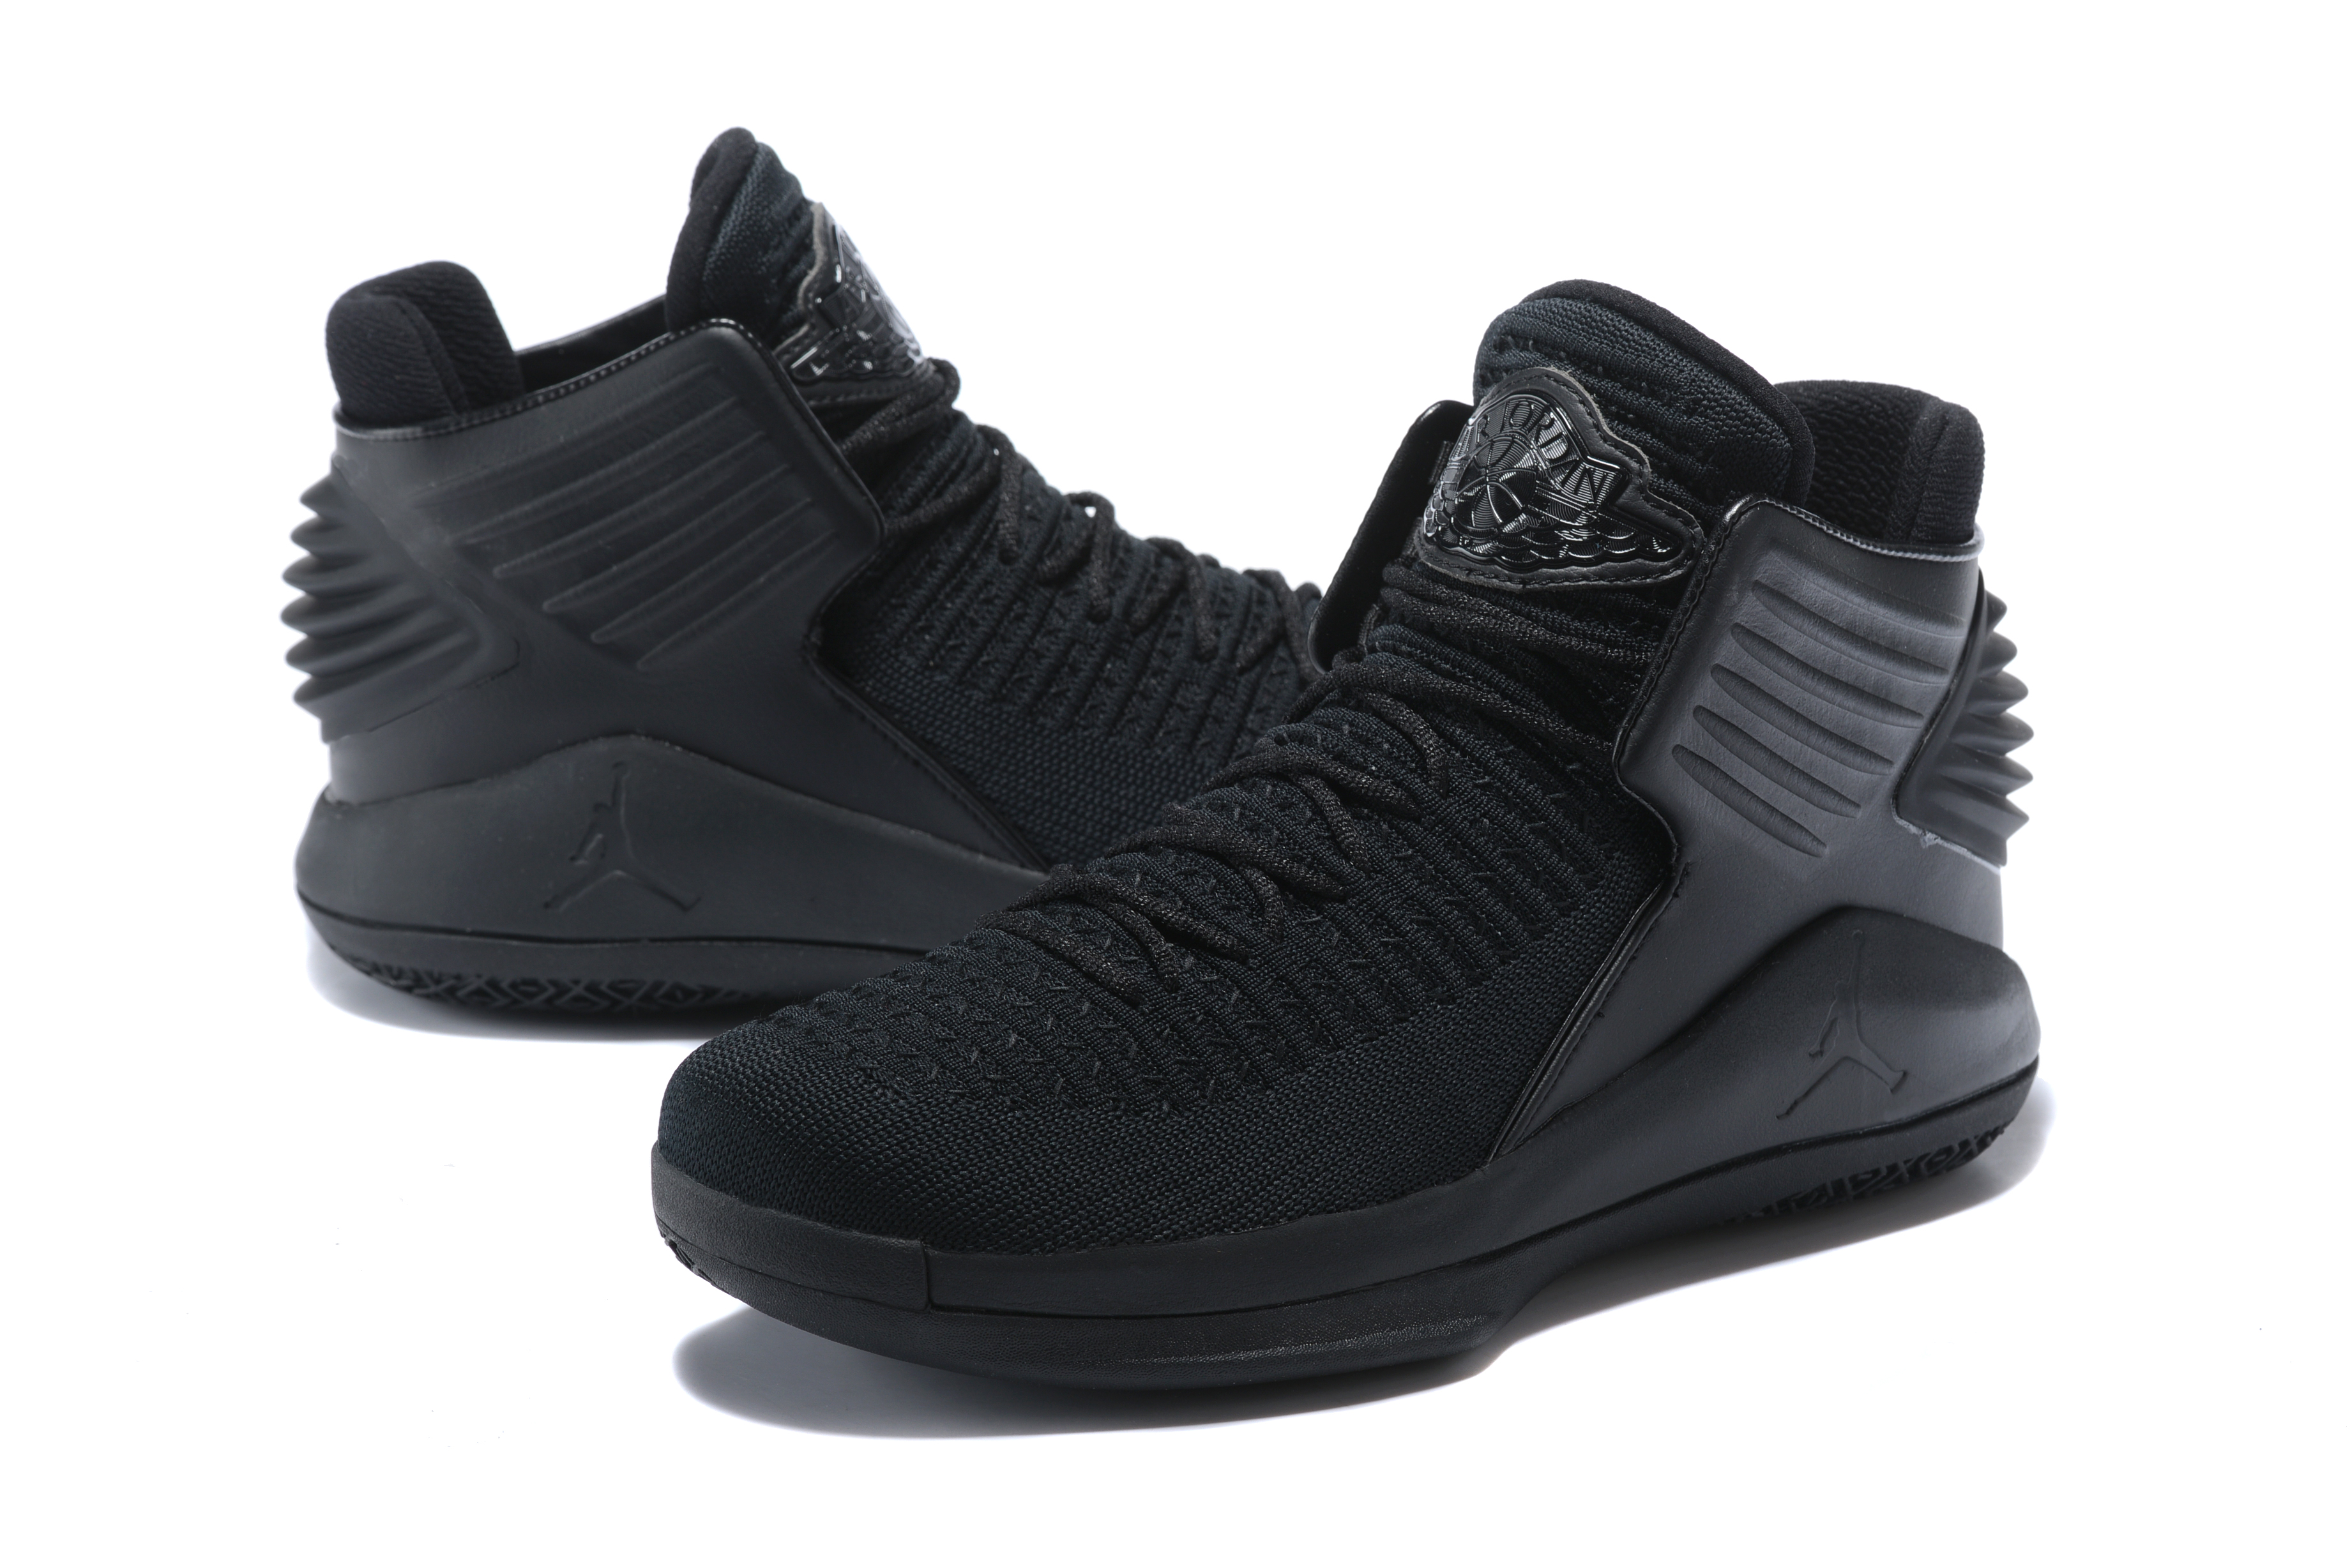 Original Air Jordan 32 All Black Shoes